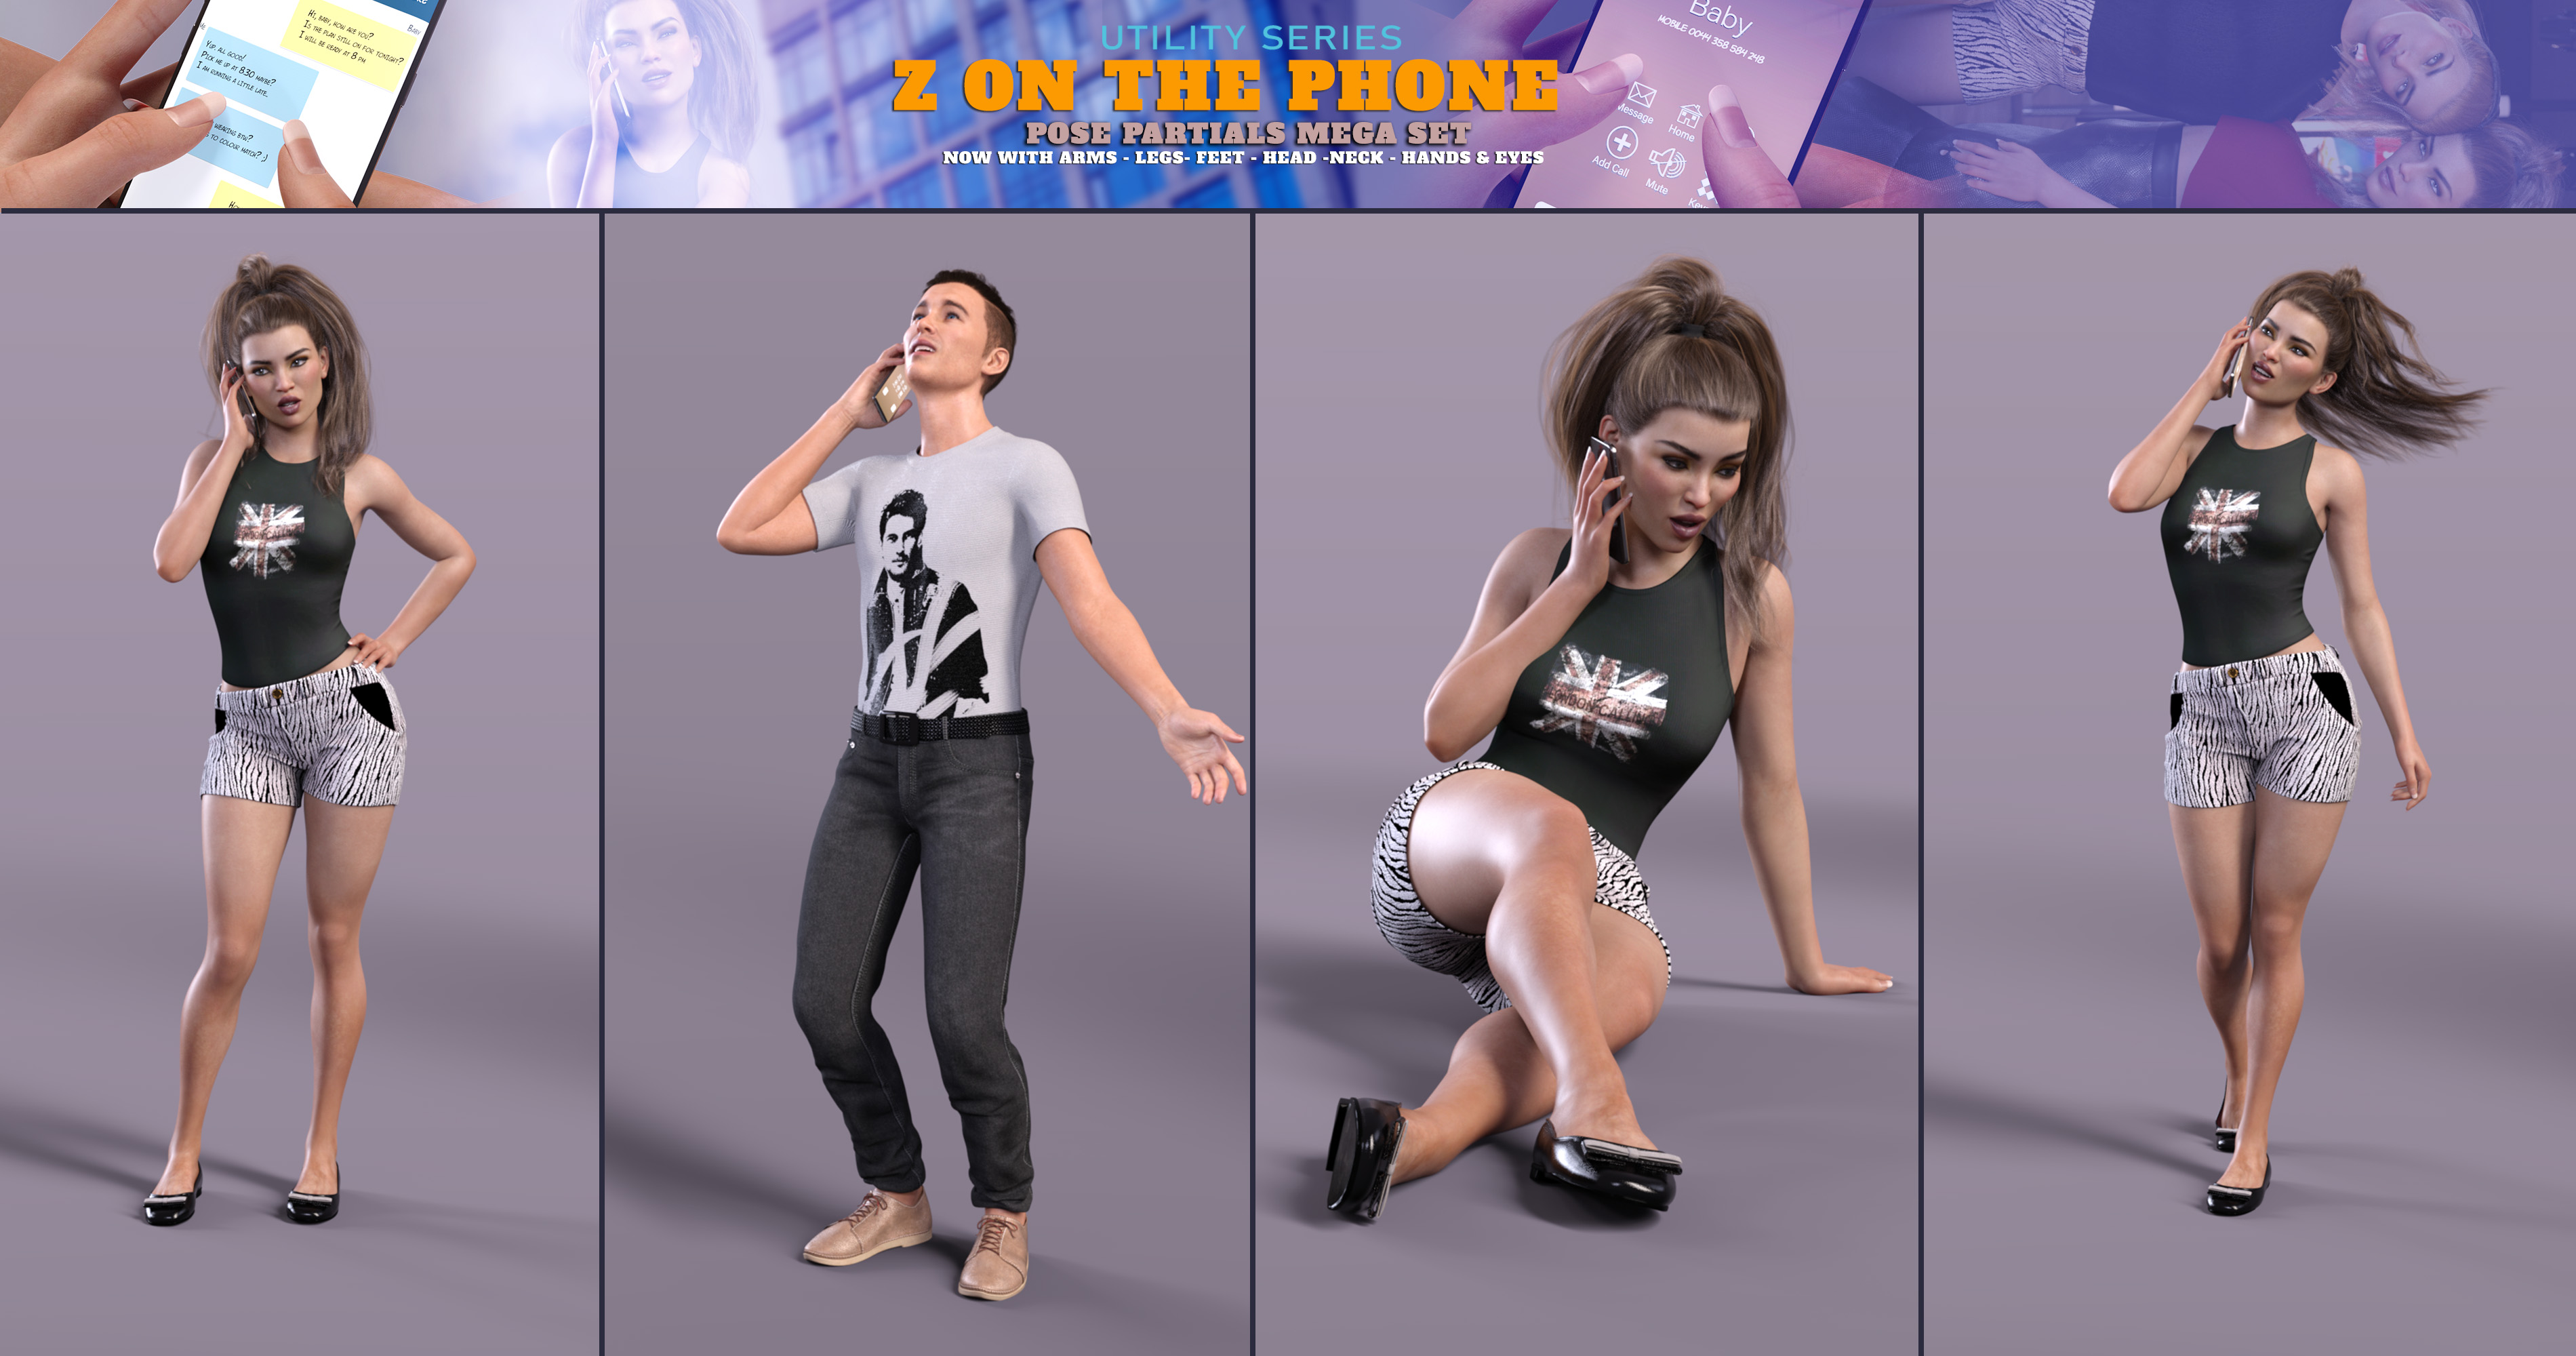 Z On the Phone Pose Mega Set by: Zeddicuss, 3D Models by Daz 3D